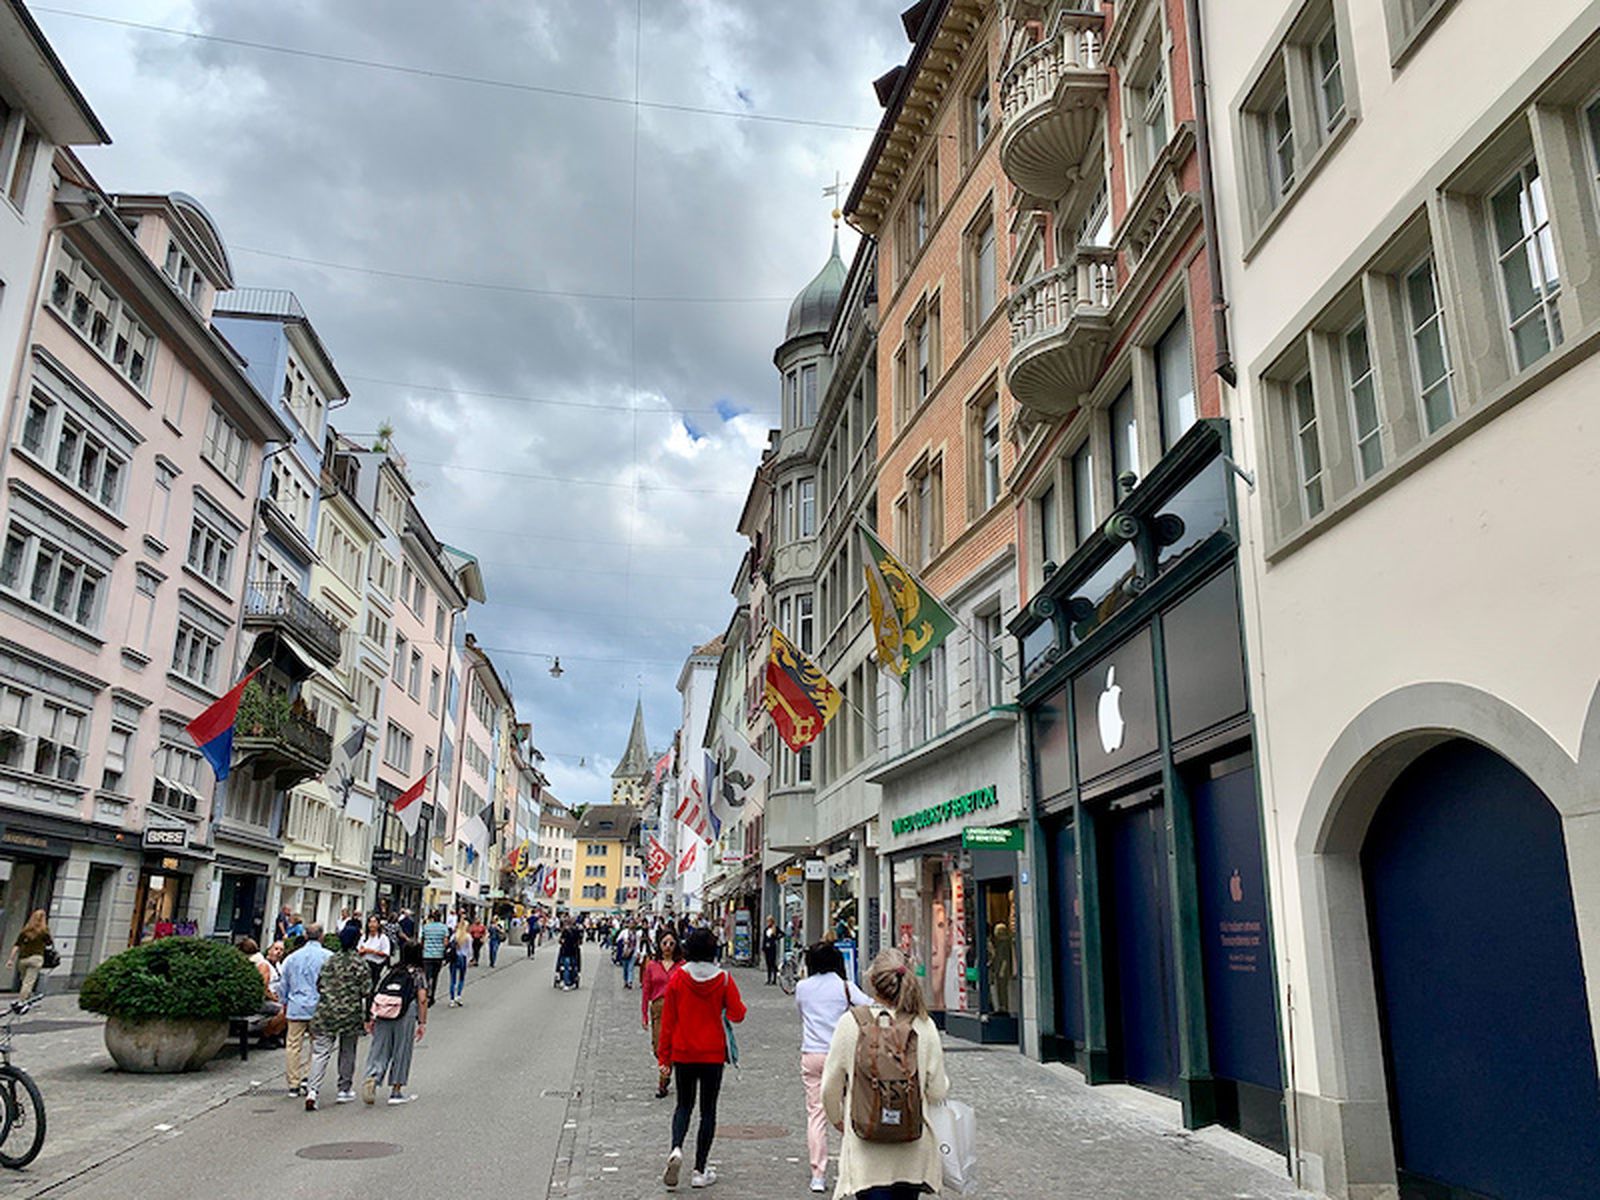 Bahnhofstrasse in Zurich, Switzerland, main downtown street in t